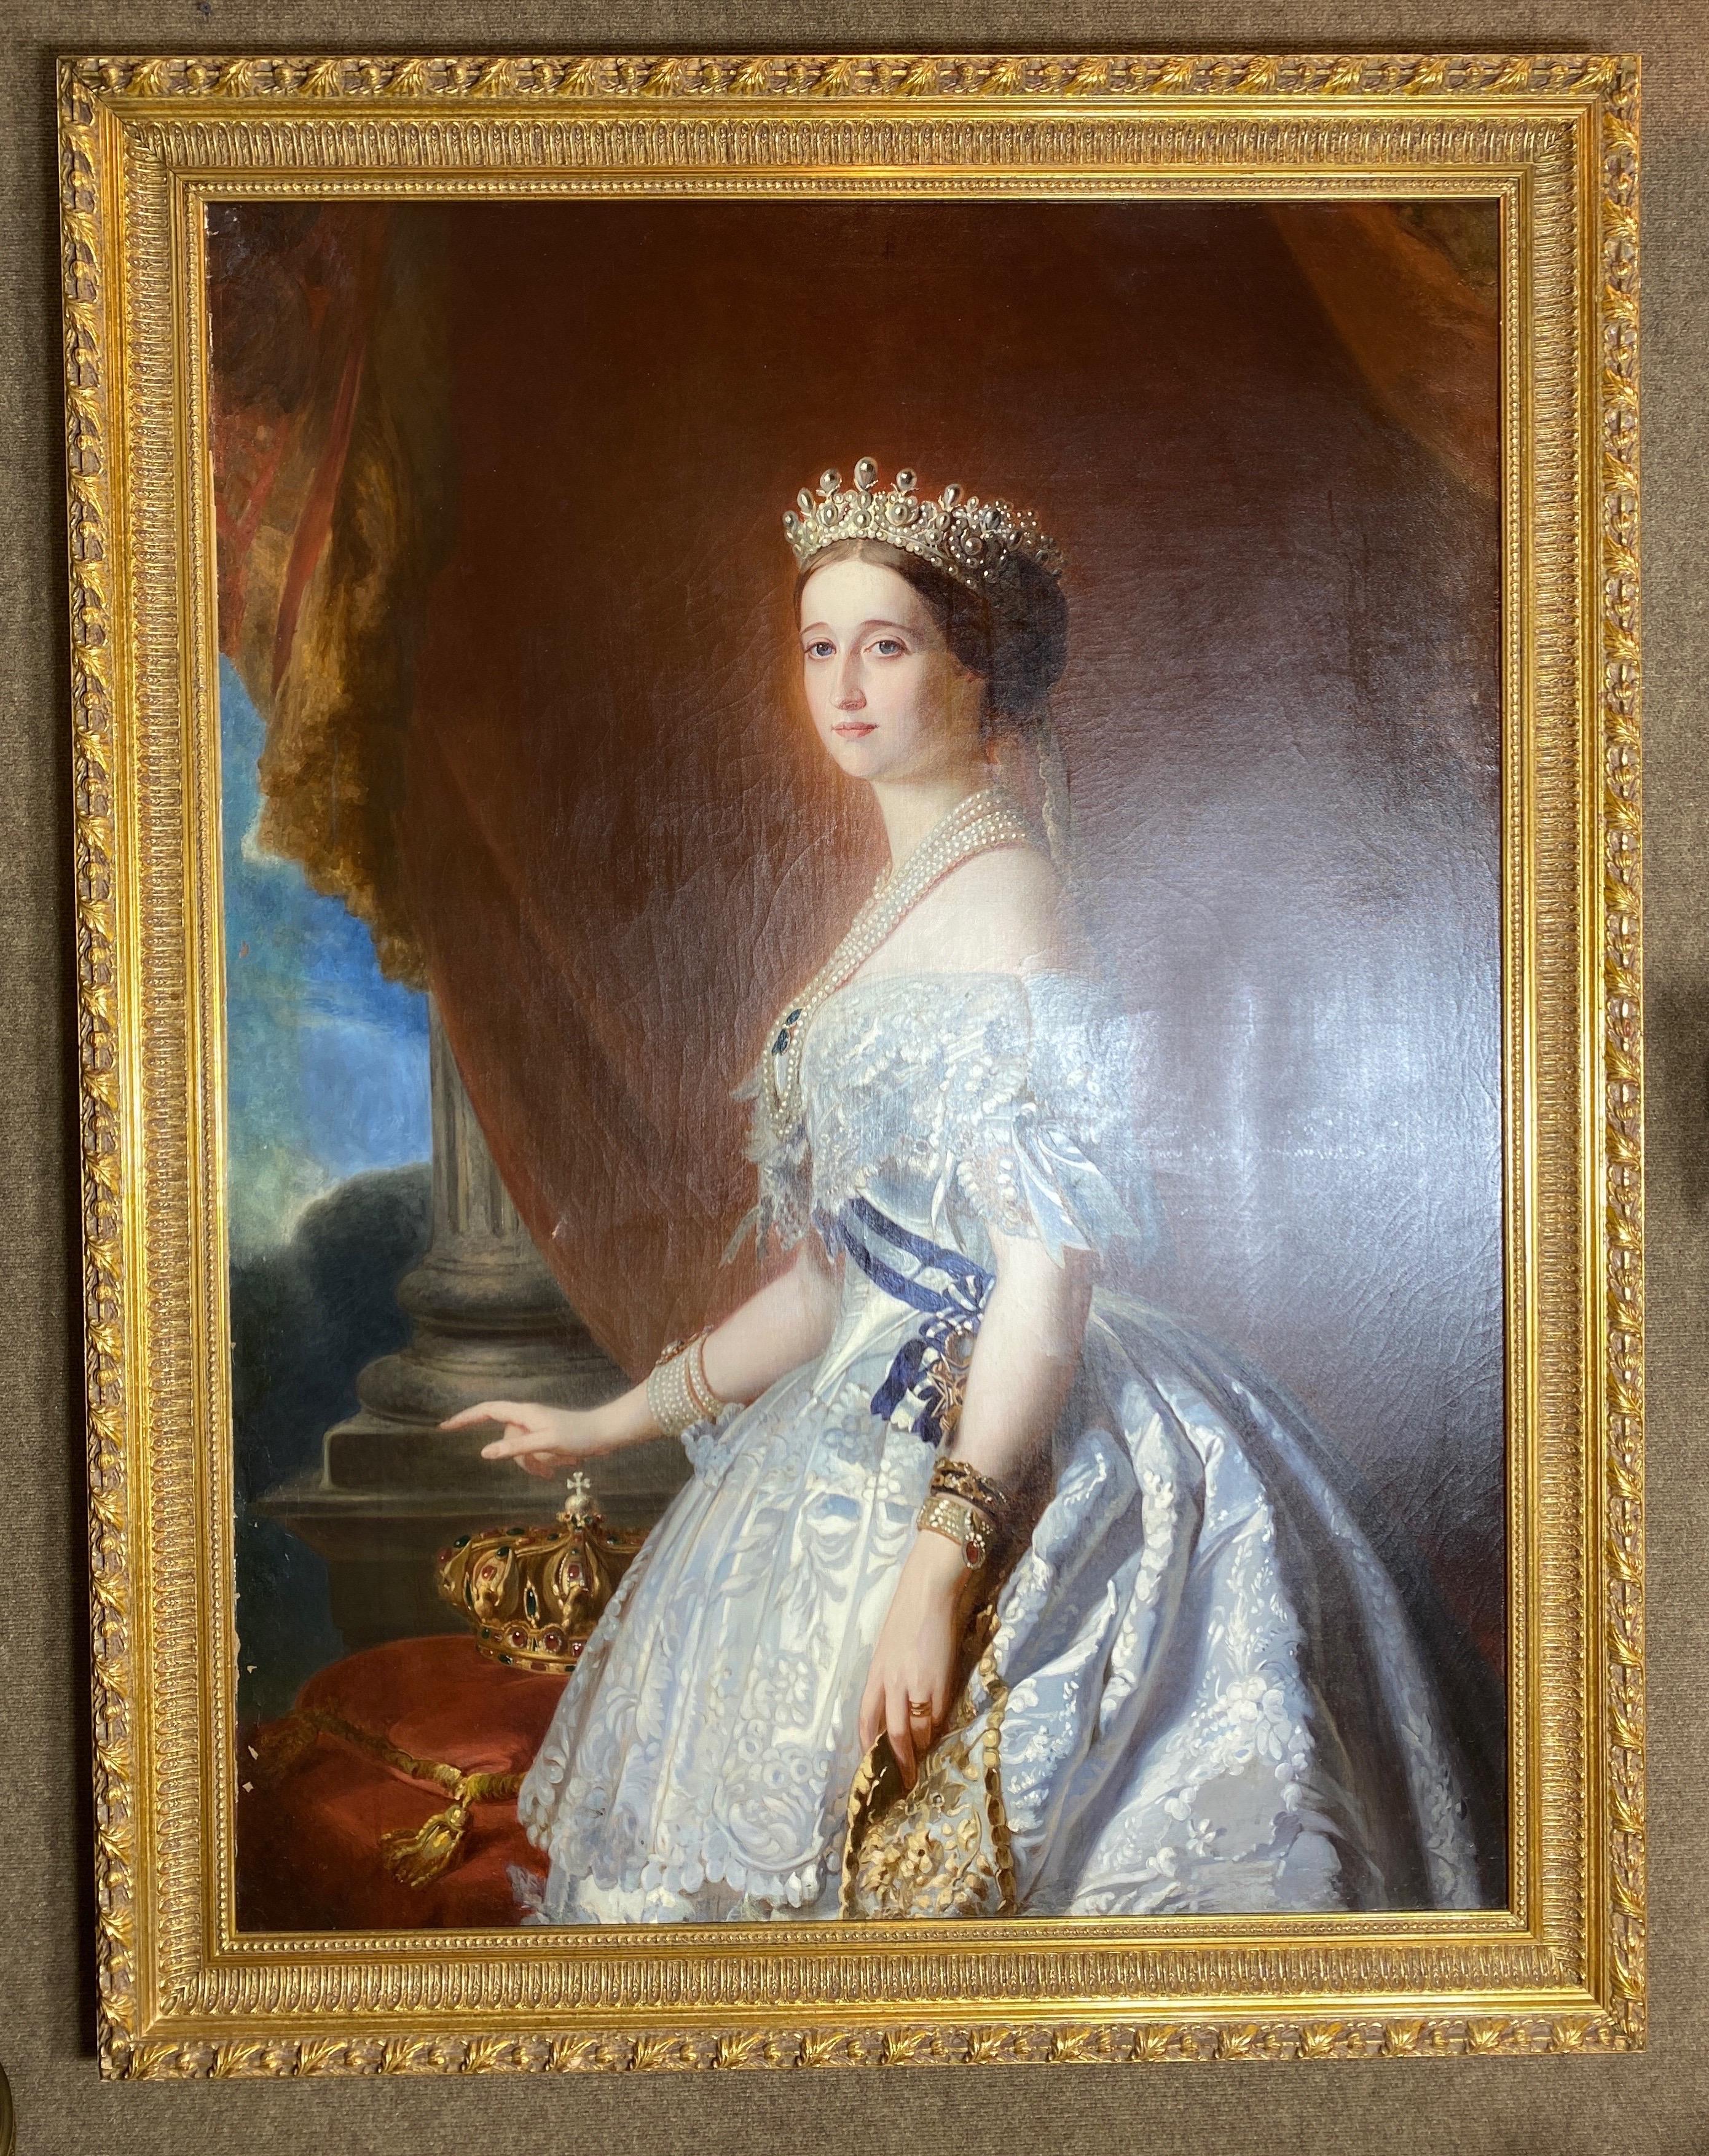 Huile sur toile allemande du XIXe siècle, finement peinte, représentant l'impératrice Eugénie dans une robe de cour blanche, par Franz Xavier Winterhalter (1805-1873).

Dimensions de la vue : 53.5